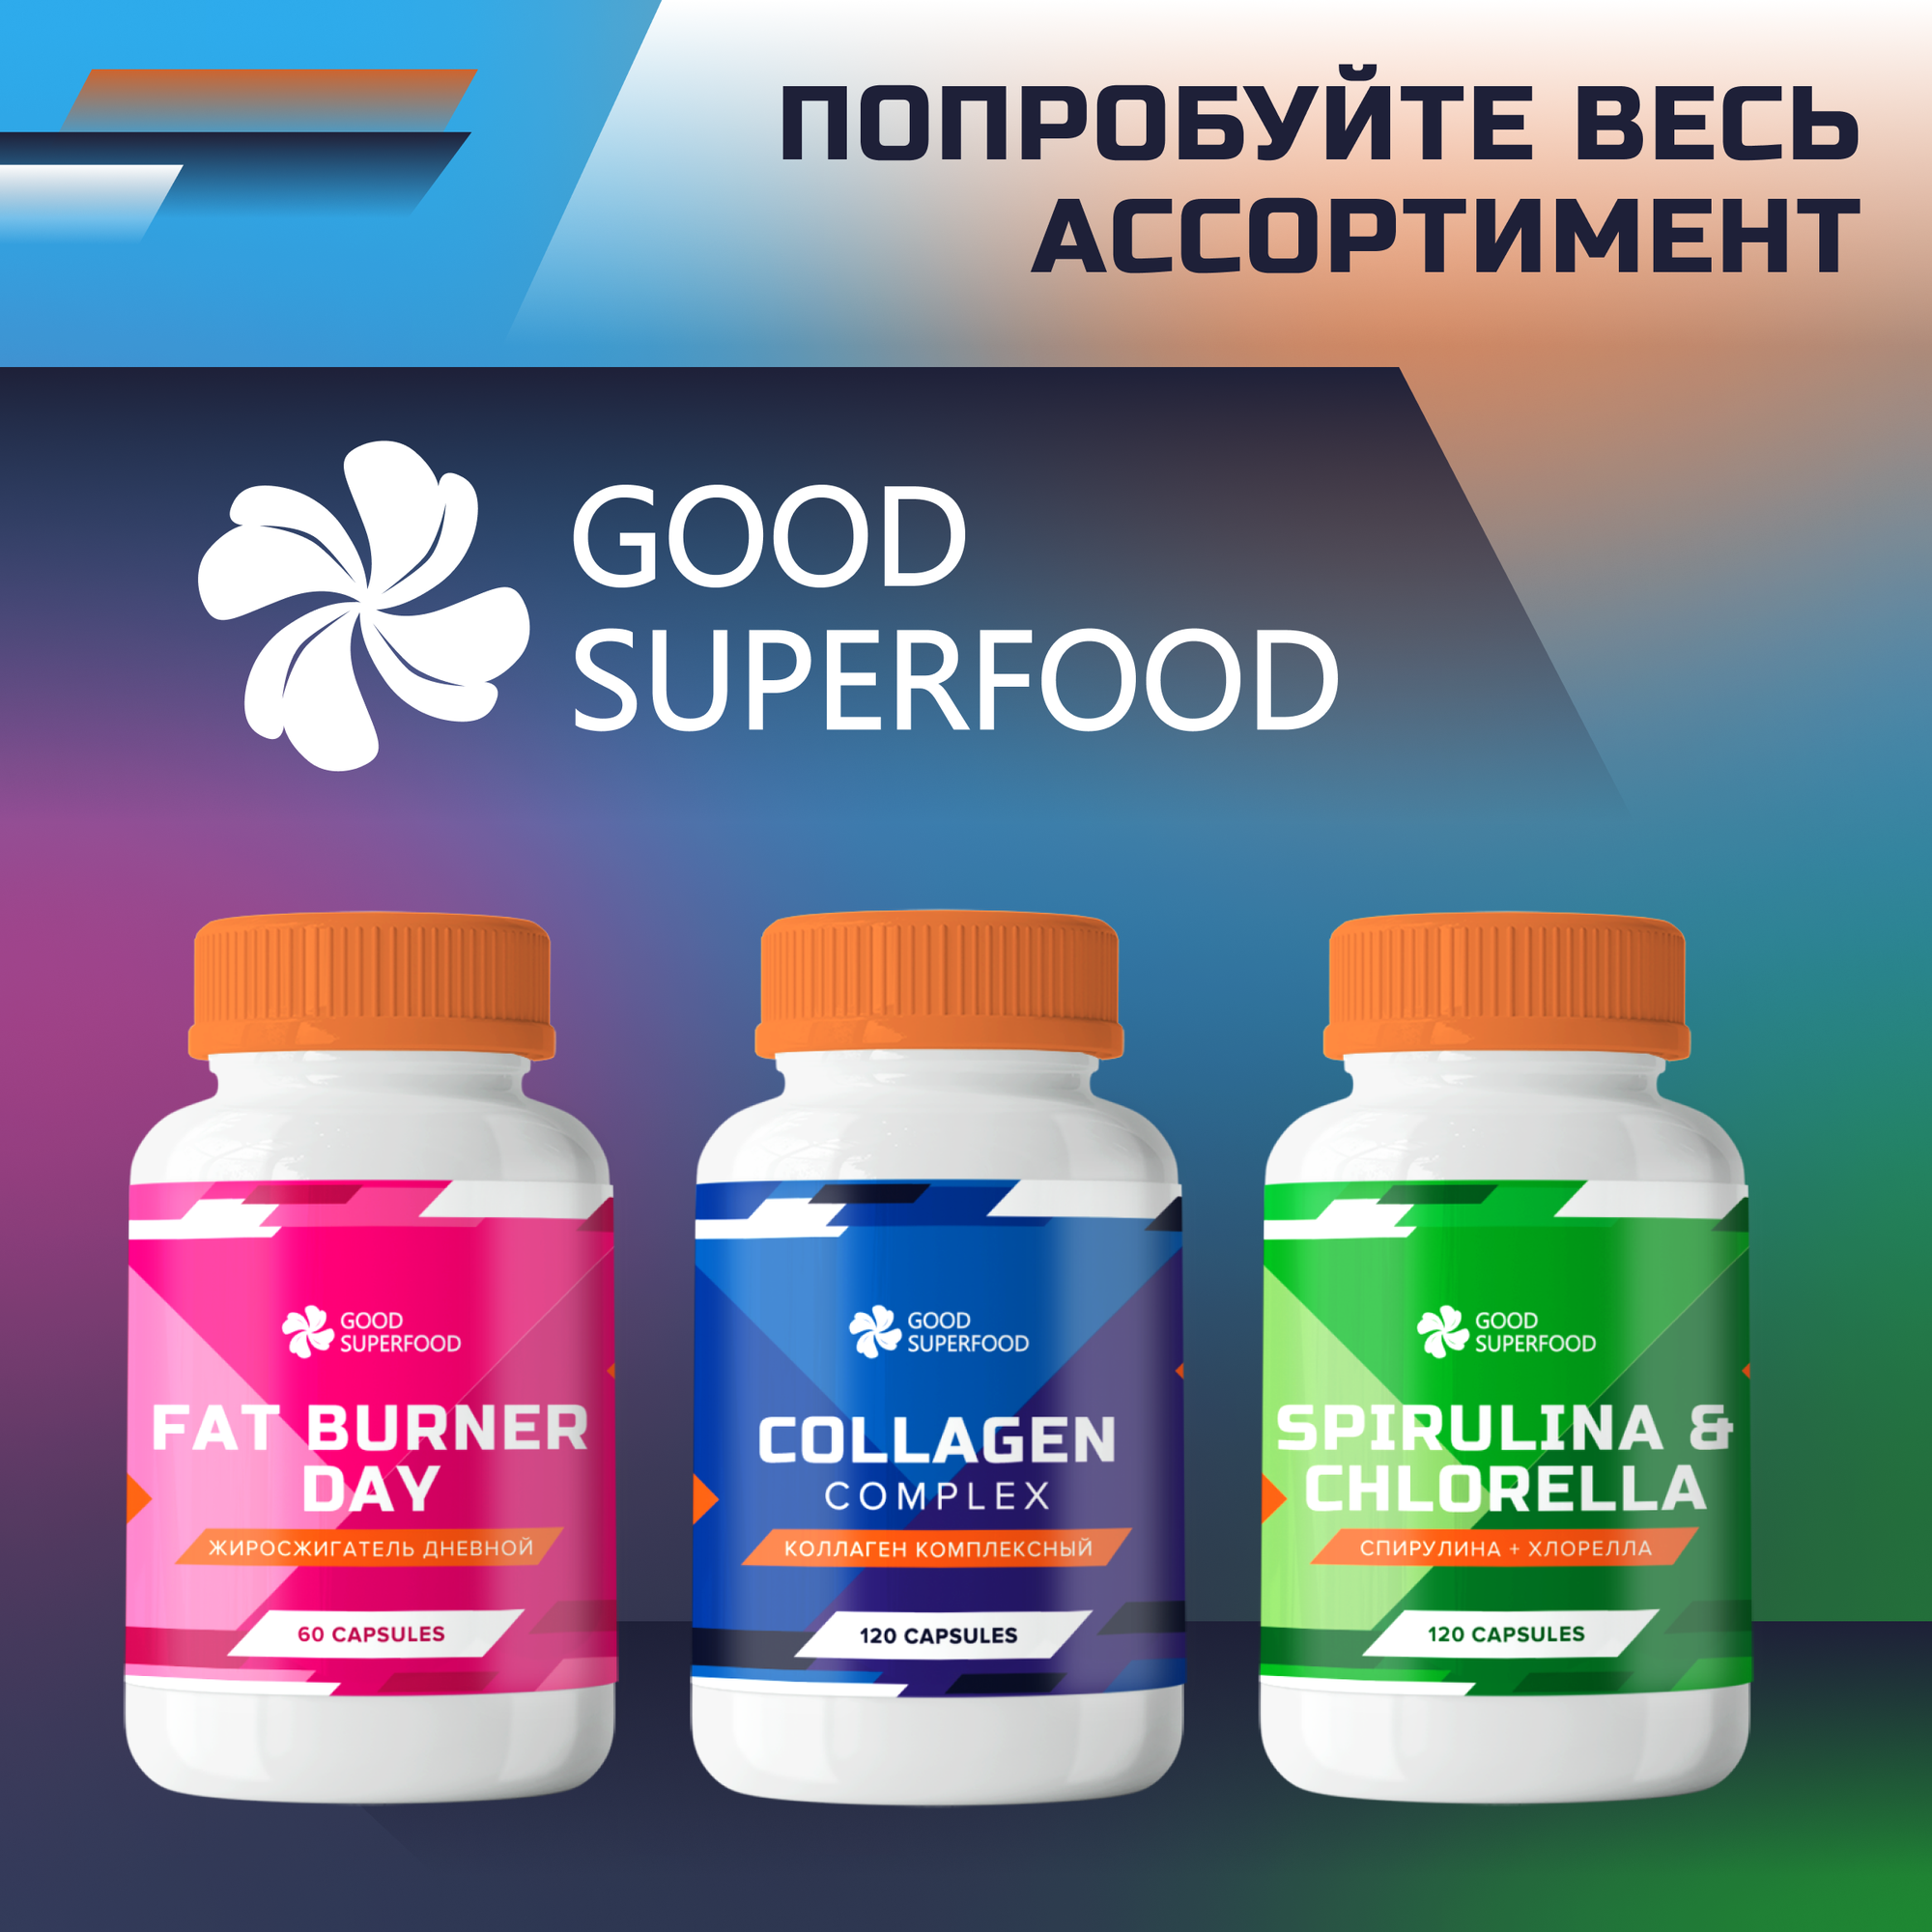 Протеин сывороточный GOOD SUPERFOOD, концентрат сывороточного белка 55% 500 г.